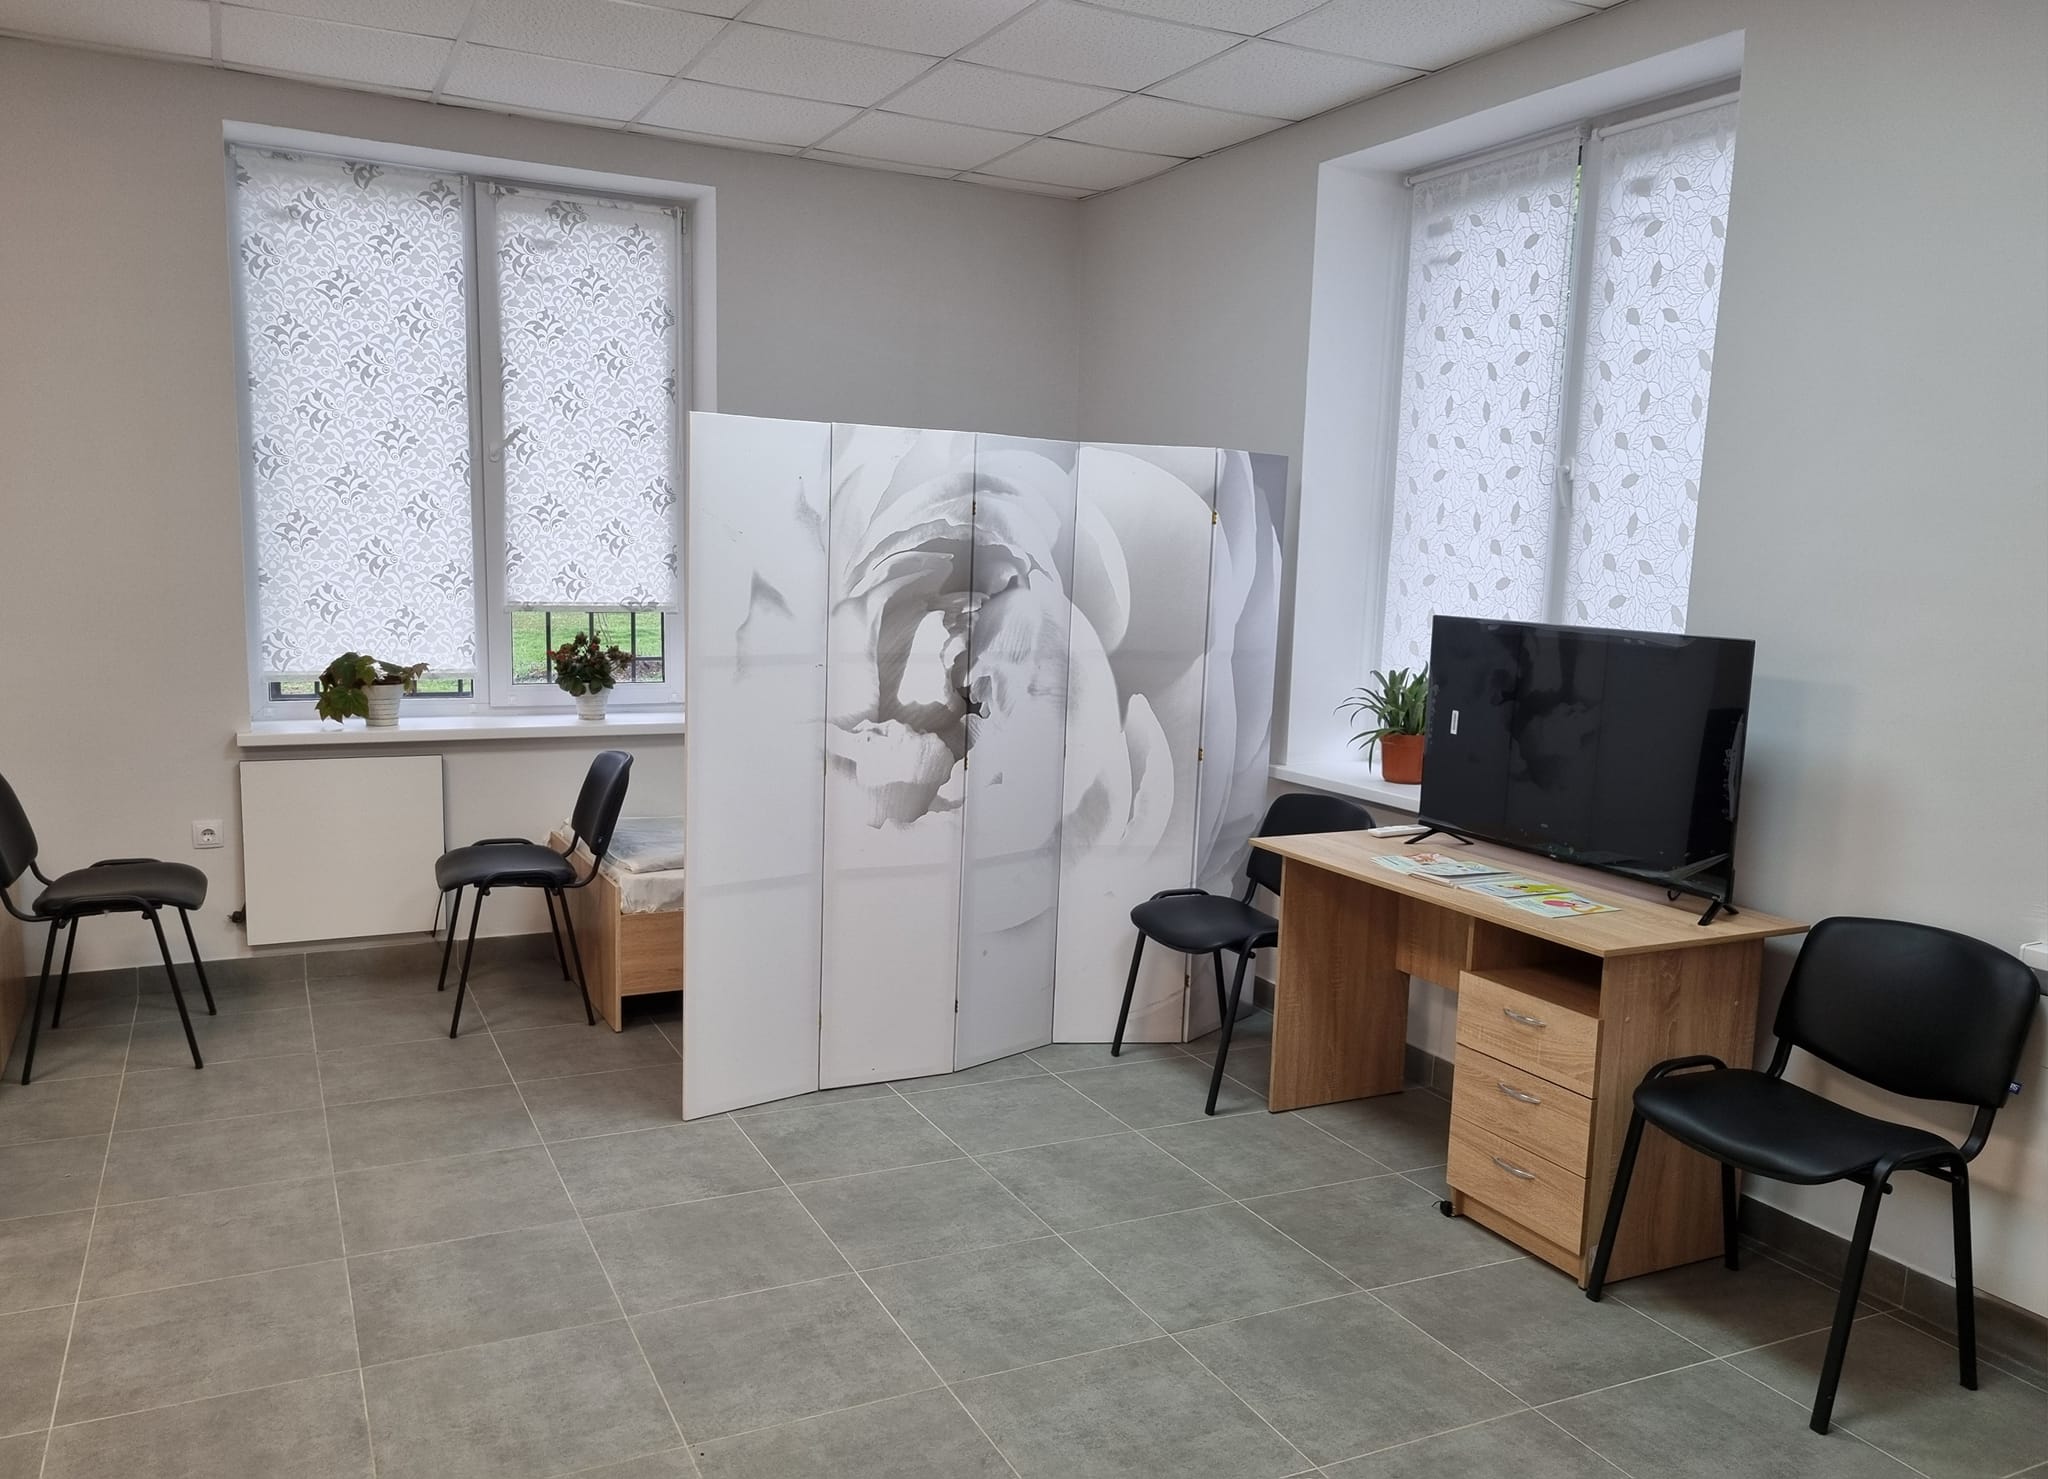 У Литовезькій громаді відкрили денний центр із кризовою кімнатою